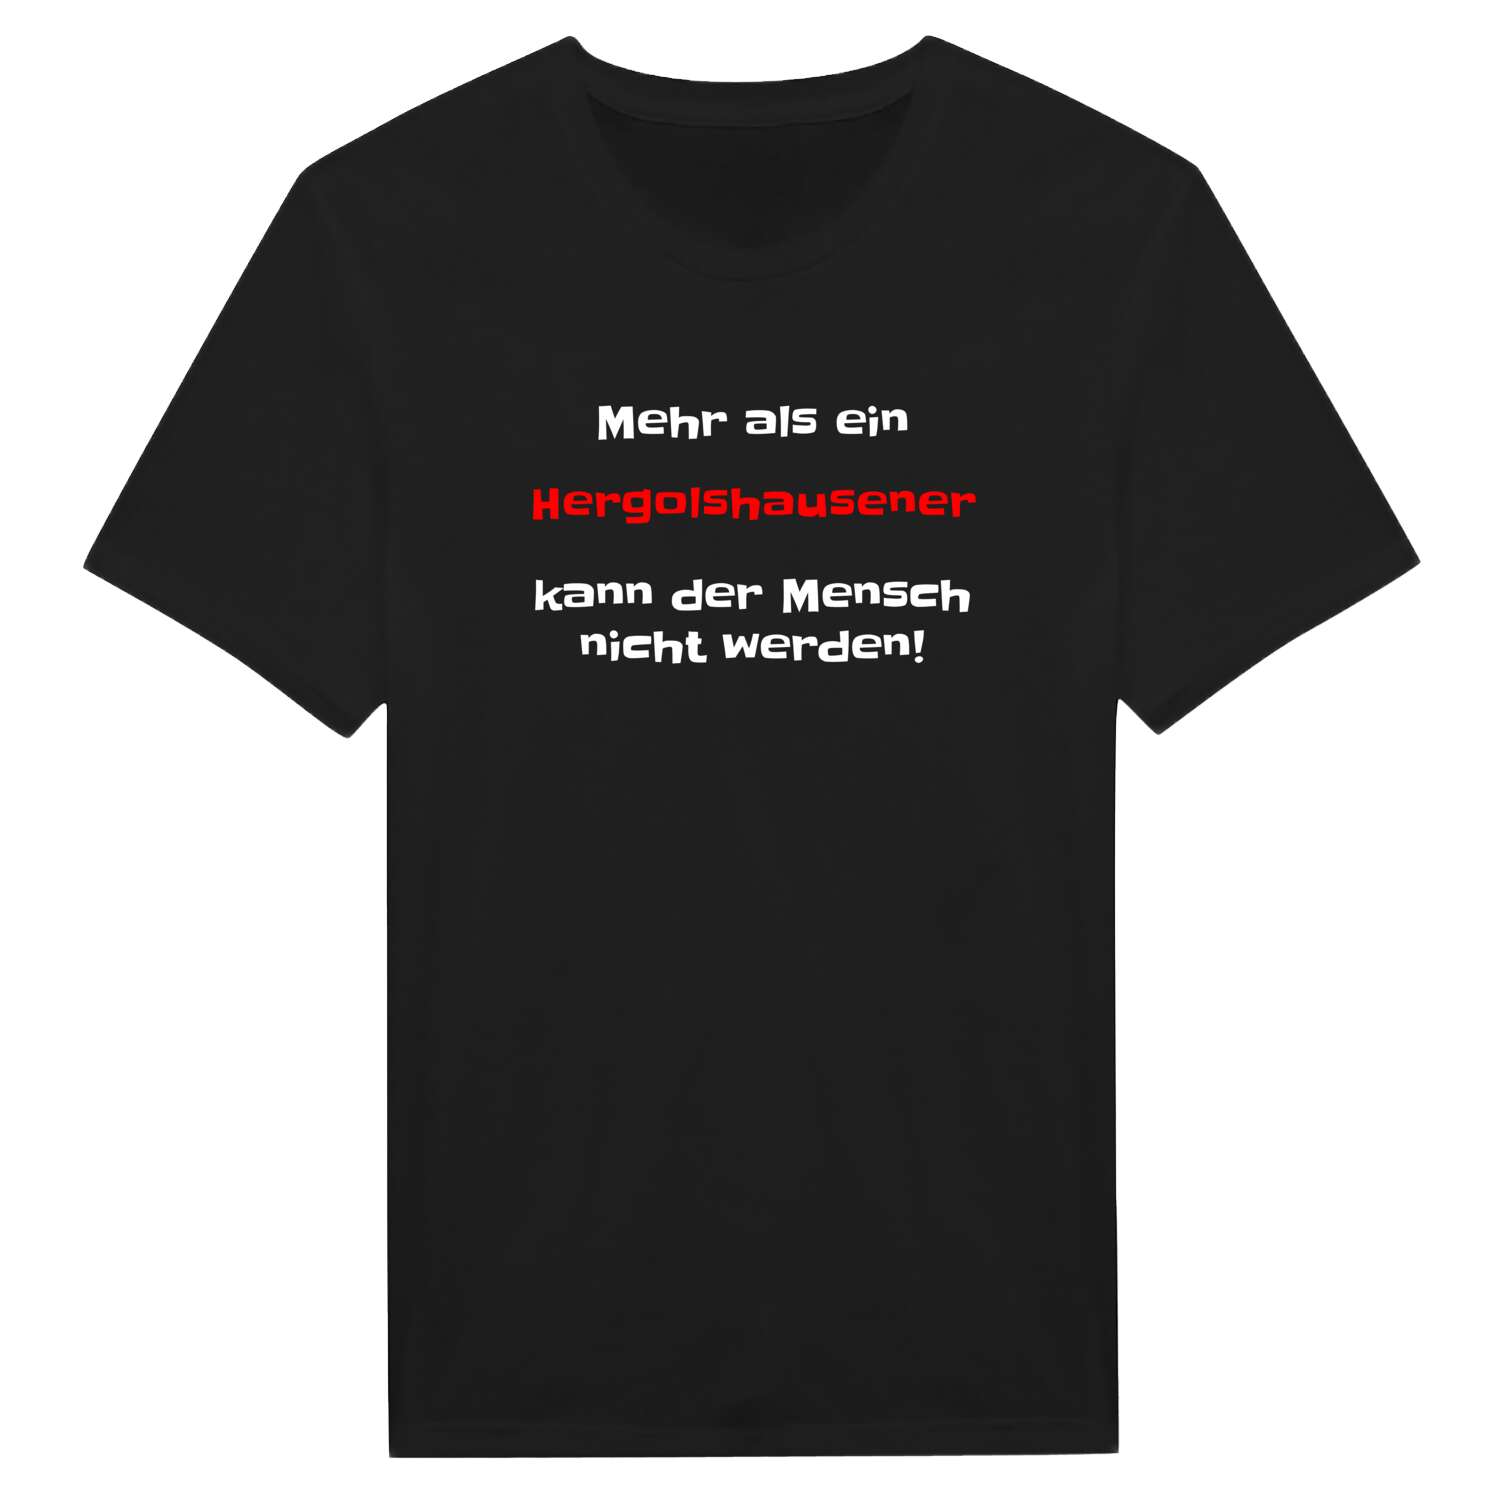 Hergolshausen T-Shirt »Mehr als ein«